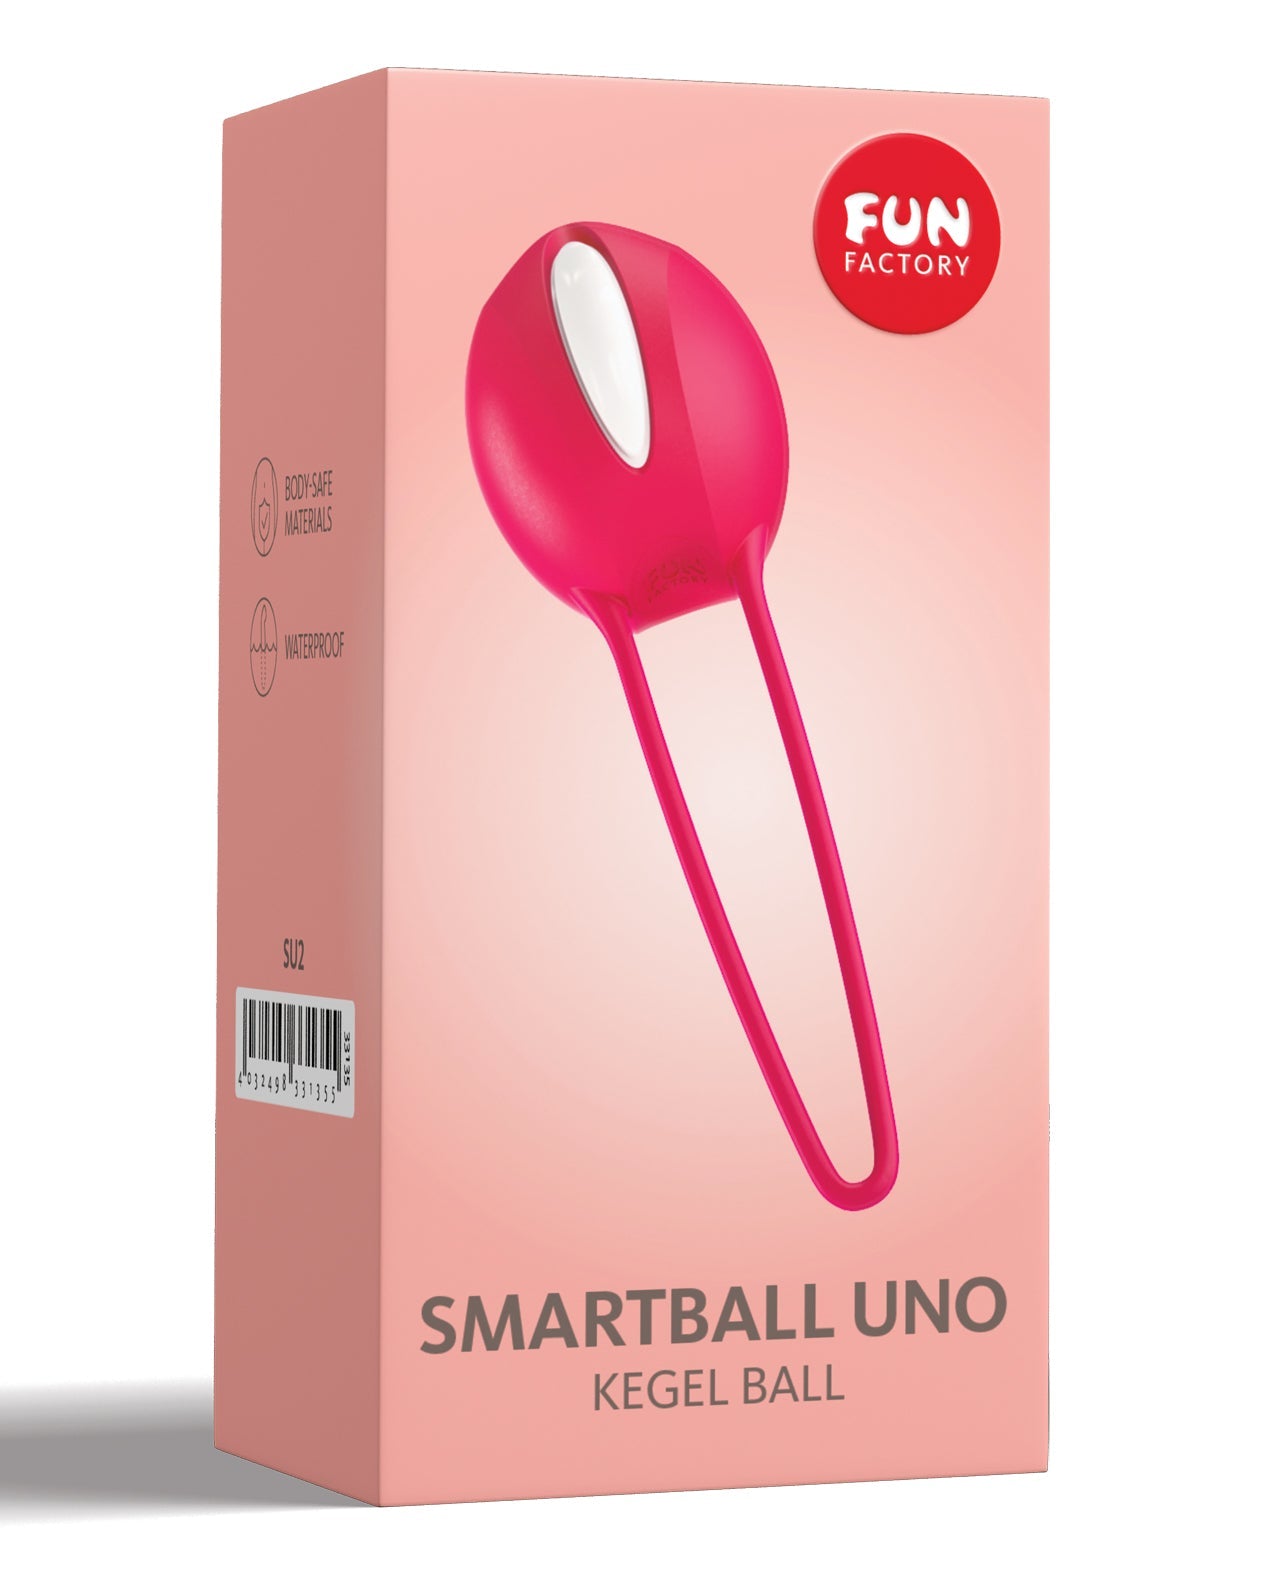 Fun Factory Smartballs Uno - White/India Red